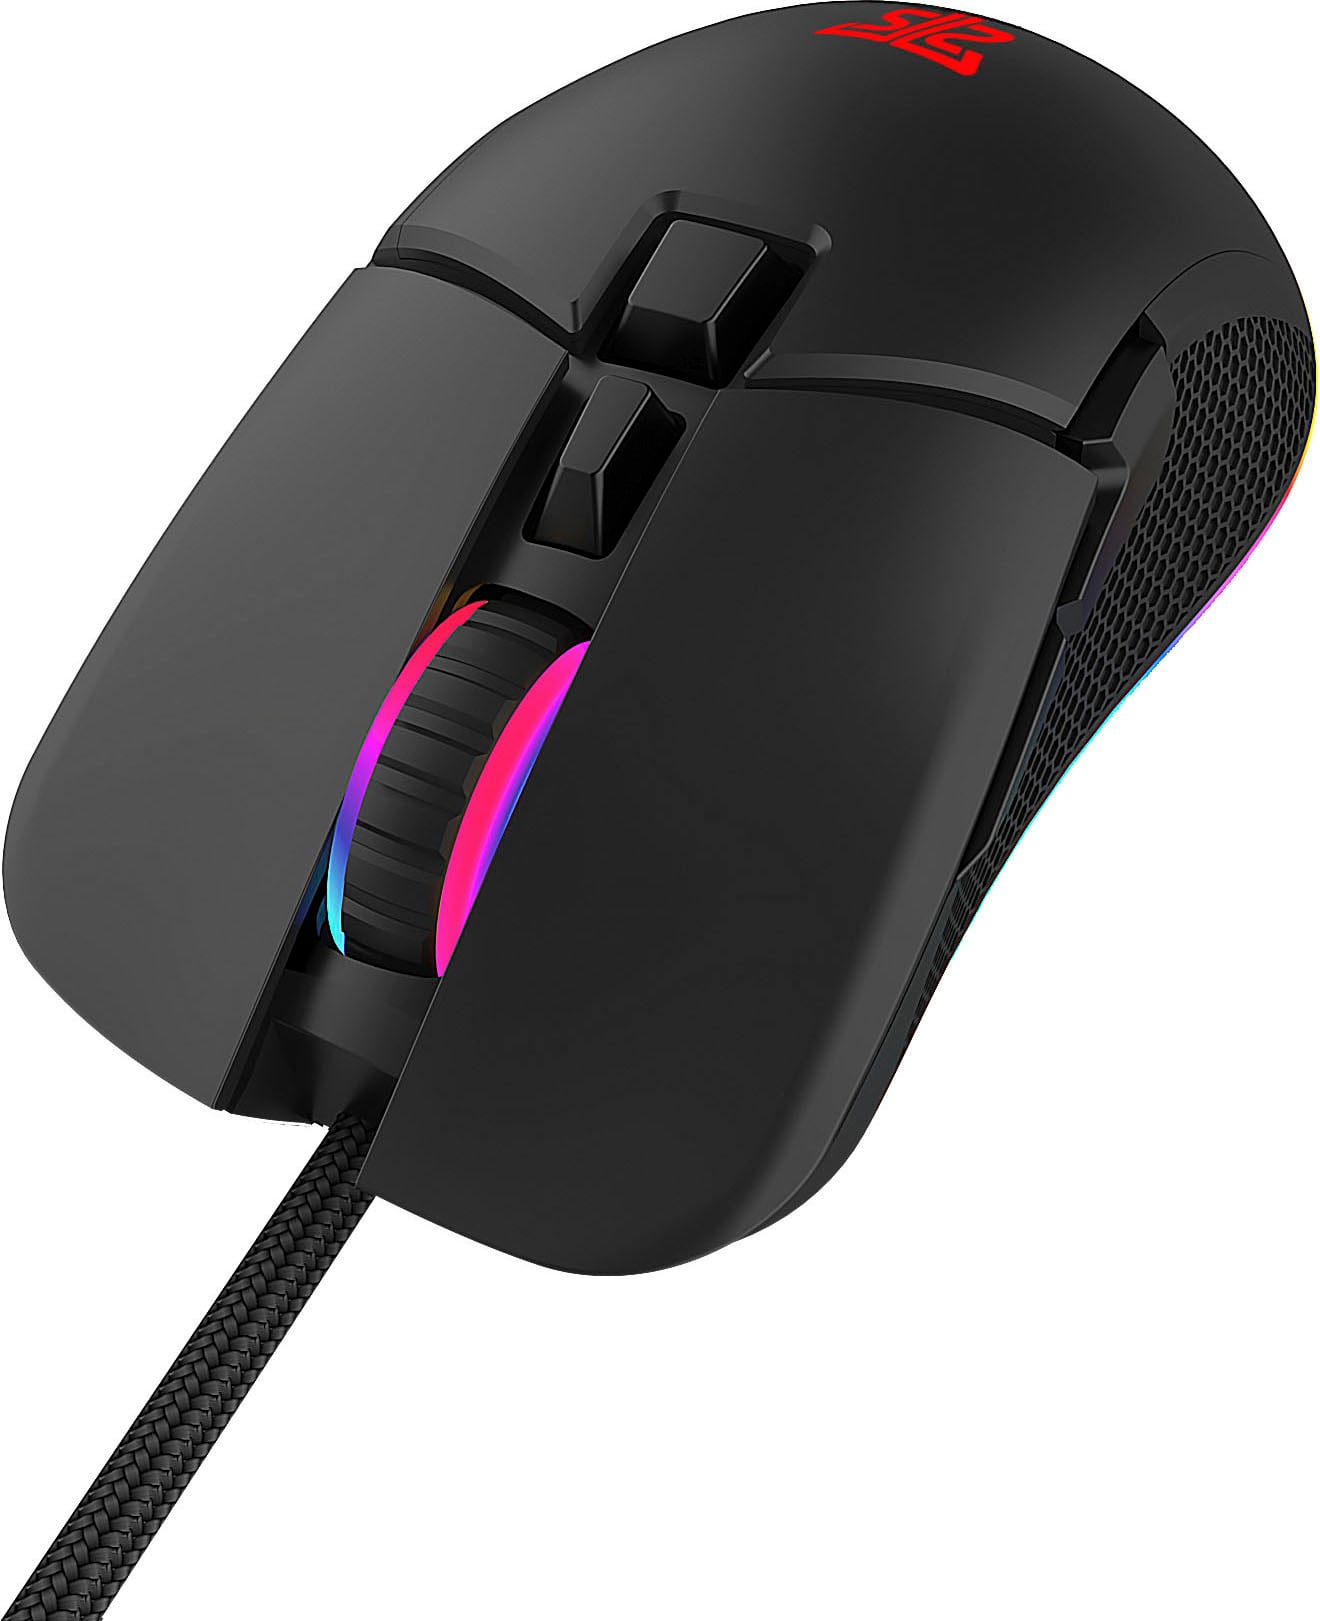 Hyrican Gaming-Maus »Stiker Gaming-Maus, RGB LED Beleuchtung, USB, kabelgebunden«